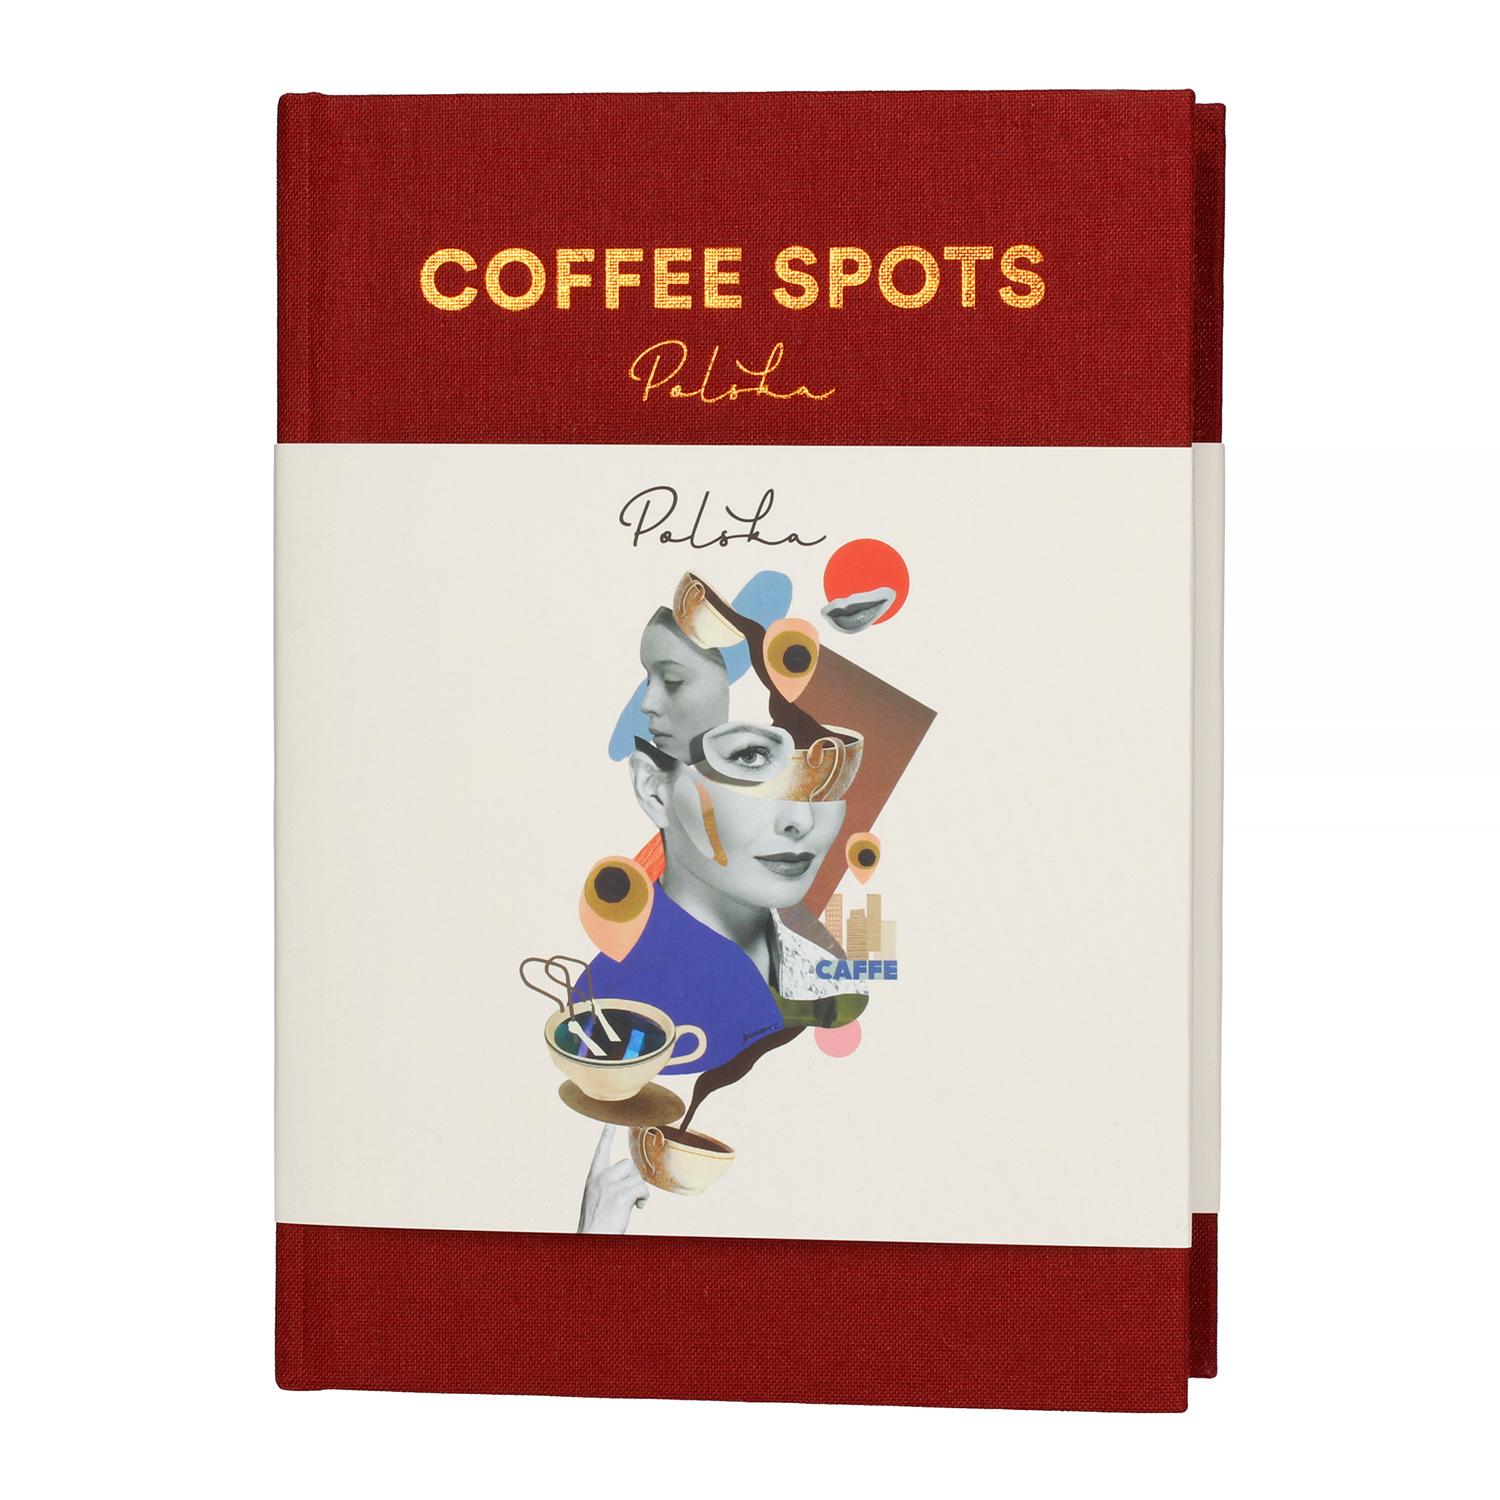 Coffee Spots Polska - hardcover - Agnieszka Bukowska and Krzysiek Rzyman